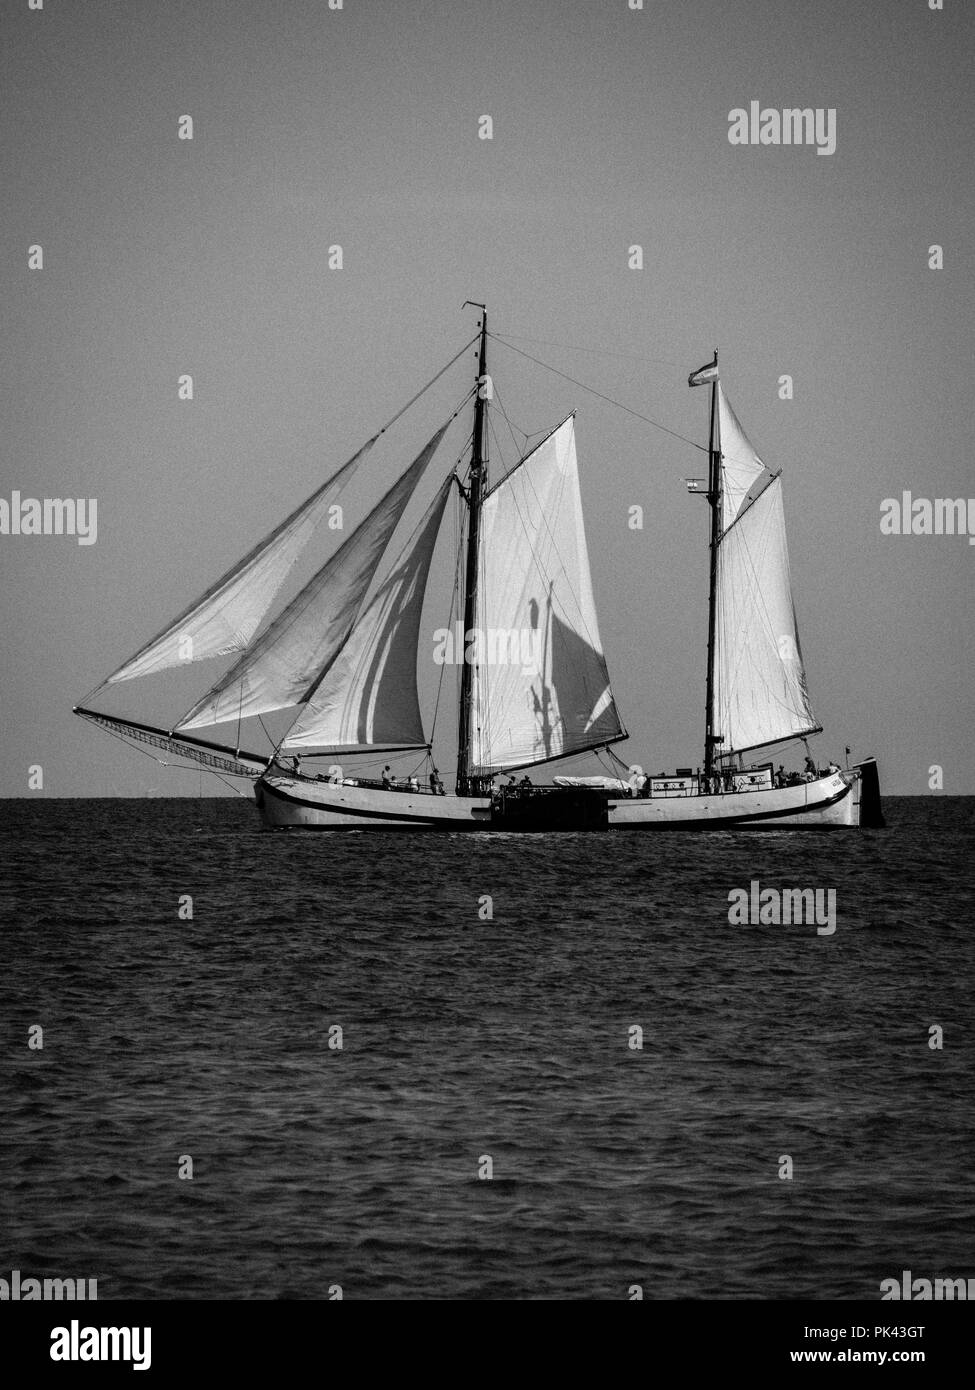 Paysage noir et blanc, ancien bateau à voile, Møns Klint, célèbres falaises de craie, île de Mons, Danemark, Europe. Banque D'Images